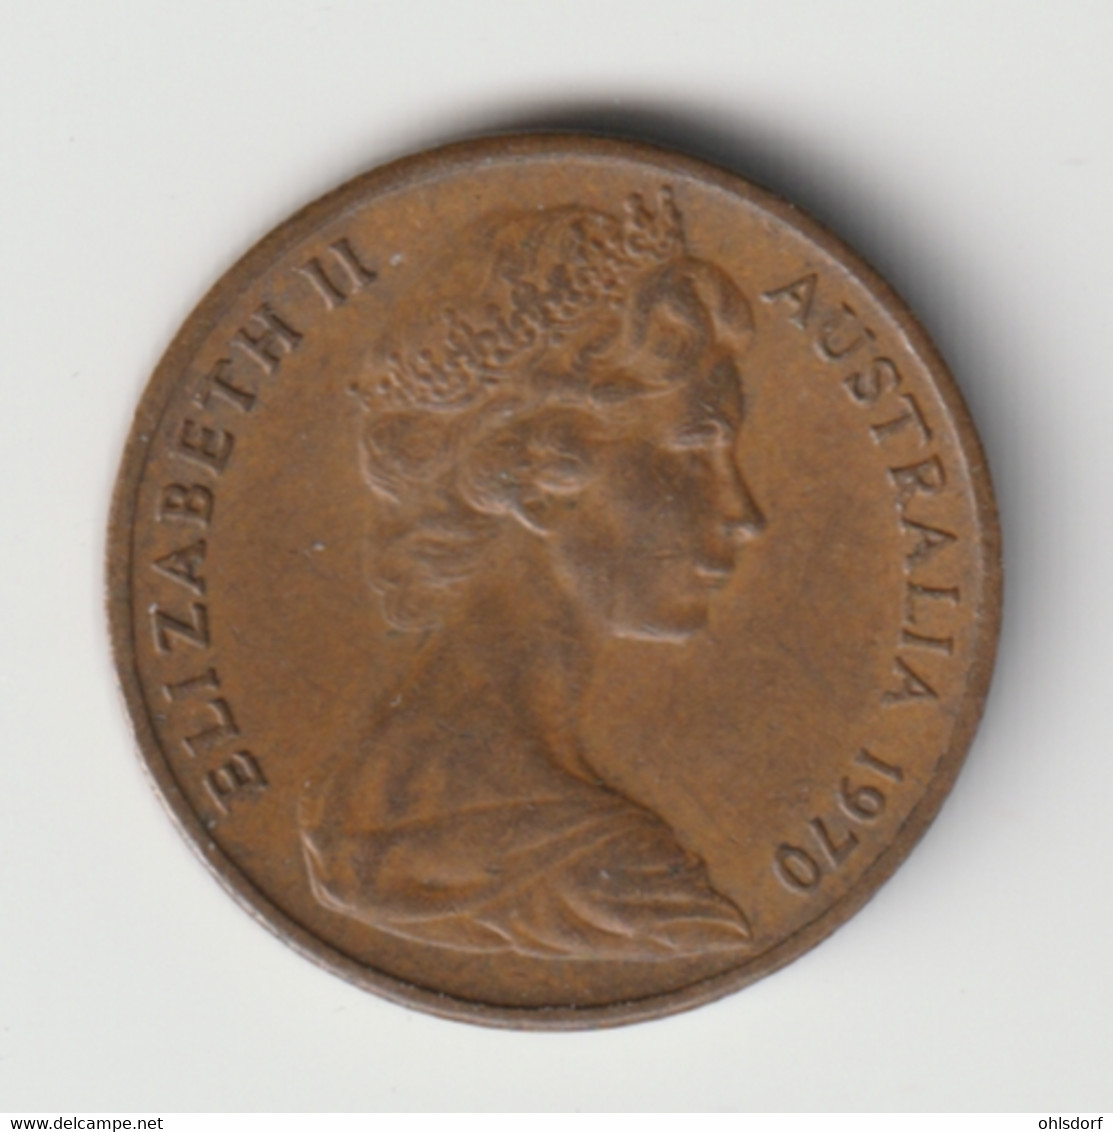 AUSTRALIA 1970: 1 Cent, KM 62 - Cent